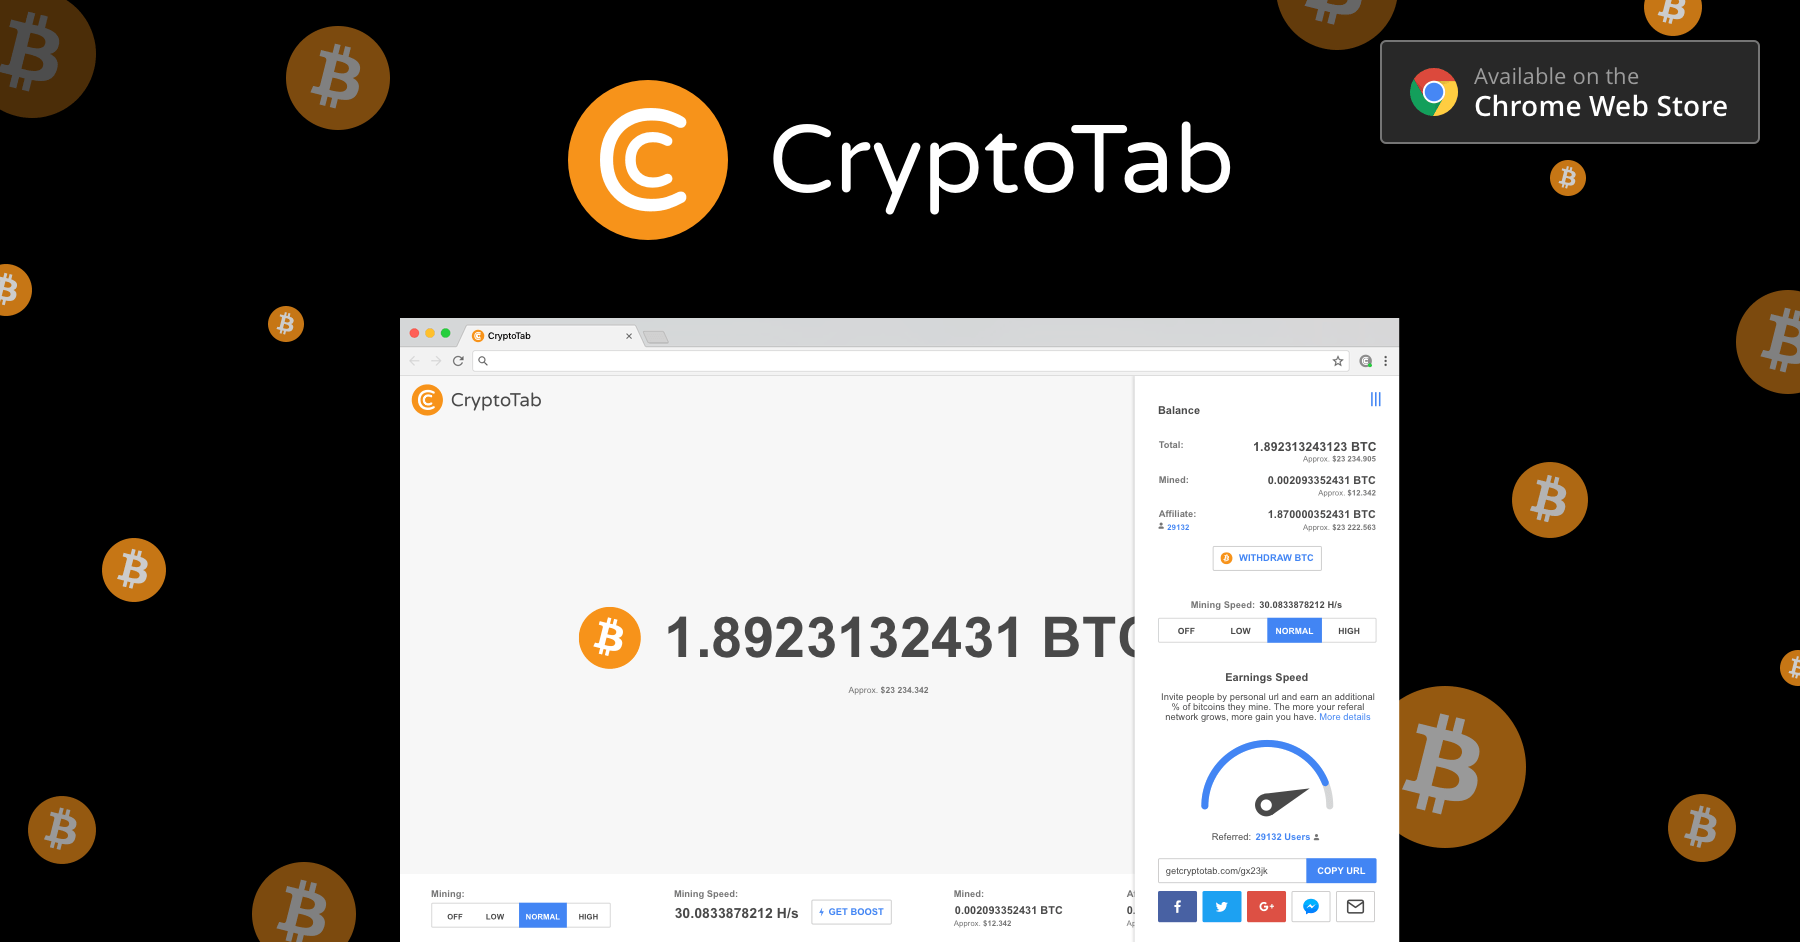 CryptoTab Browser - Leggero, veloce e pronto per il mining!